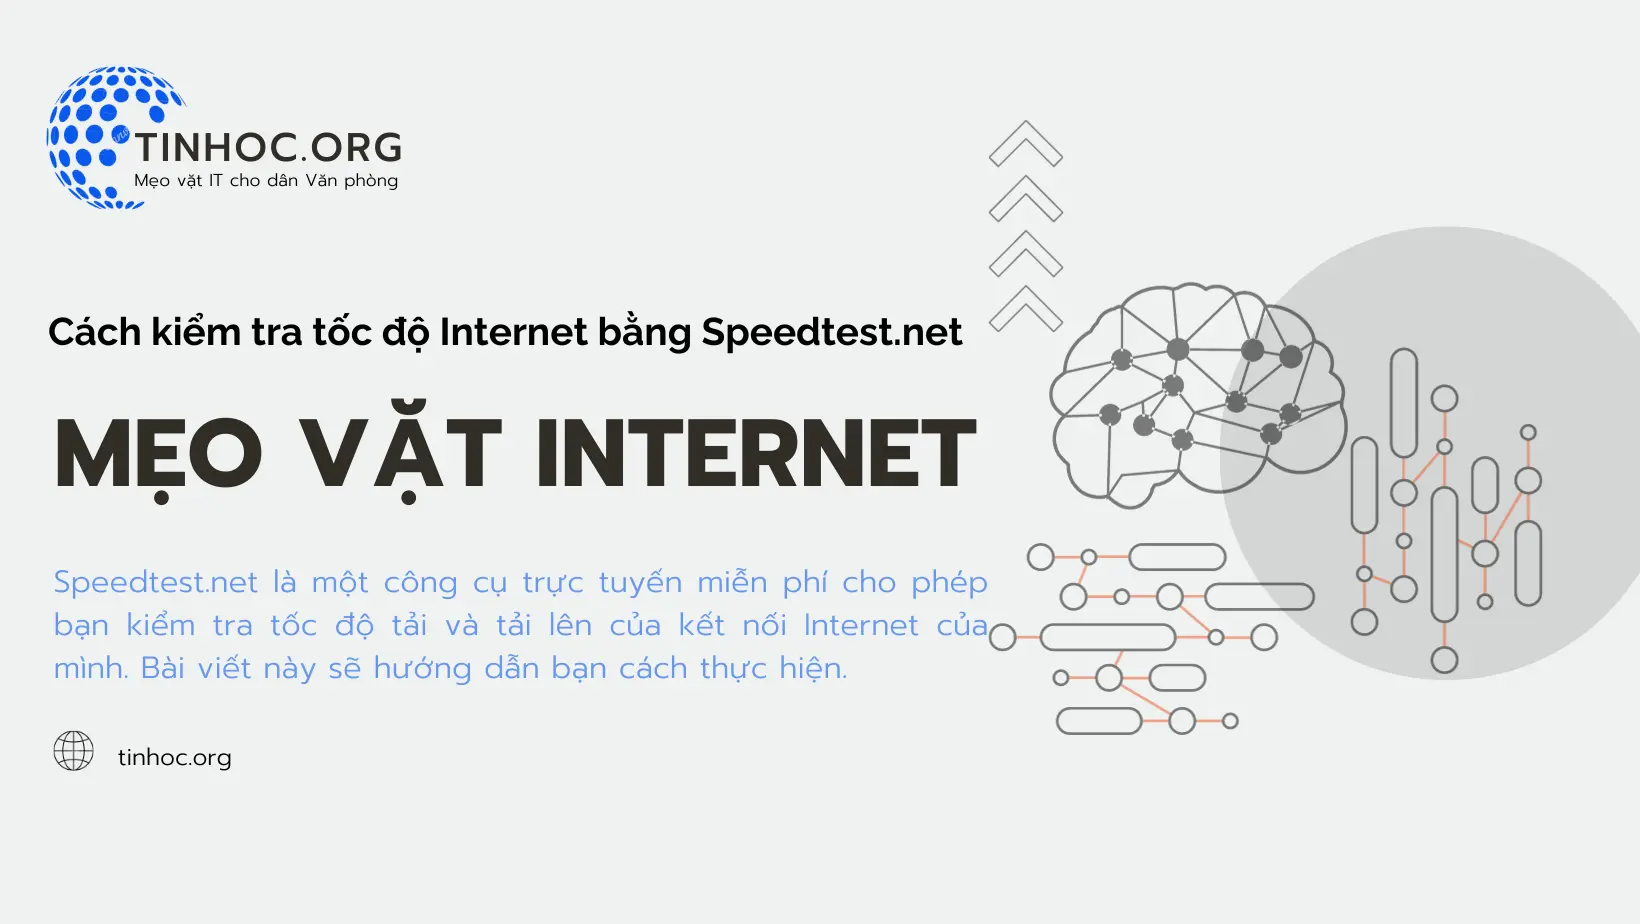 Bạn có biết rằng chỉ cần một vài bước đơn giản, bạn có thể kiểm tra tốc độ Internet của mình bằng Speedtest.net?